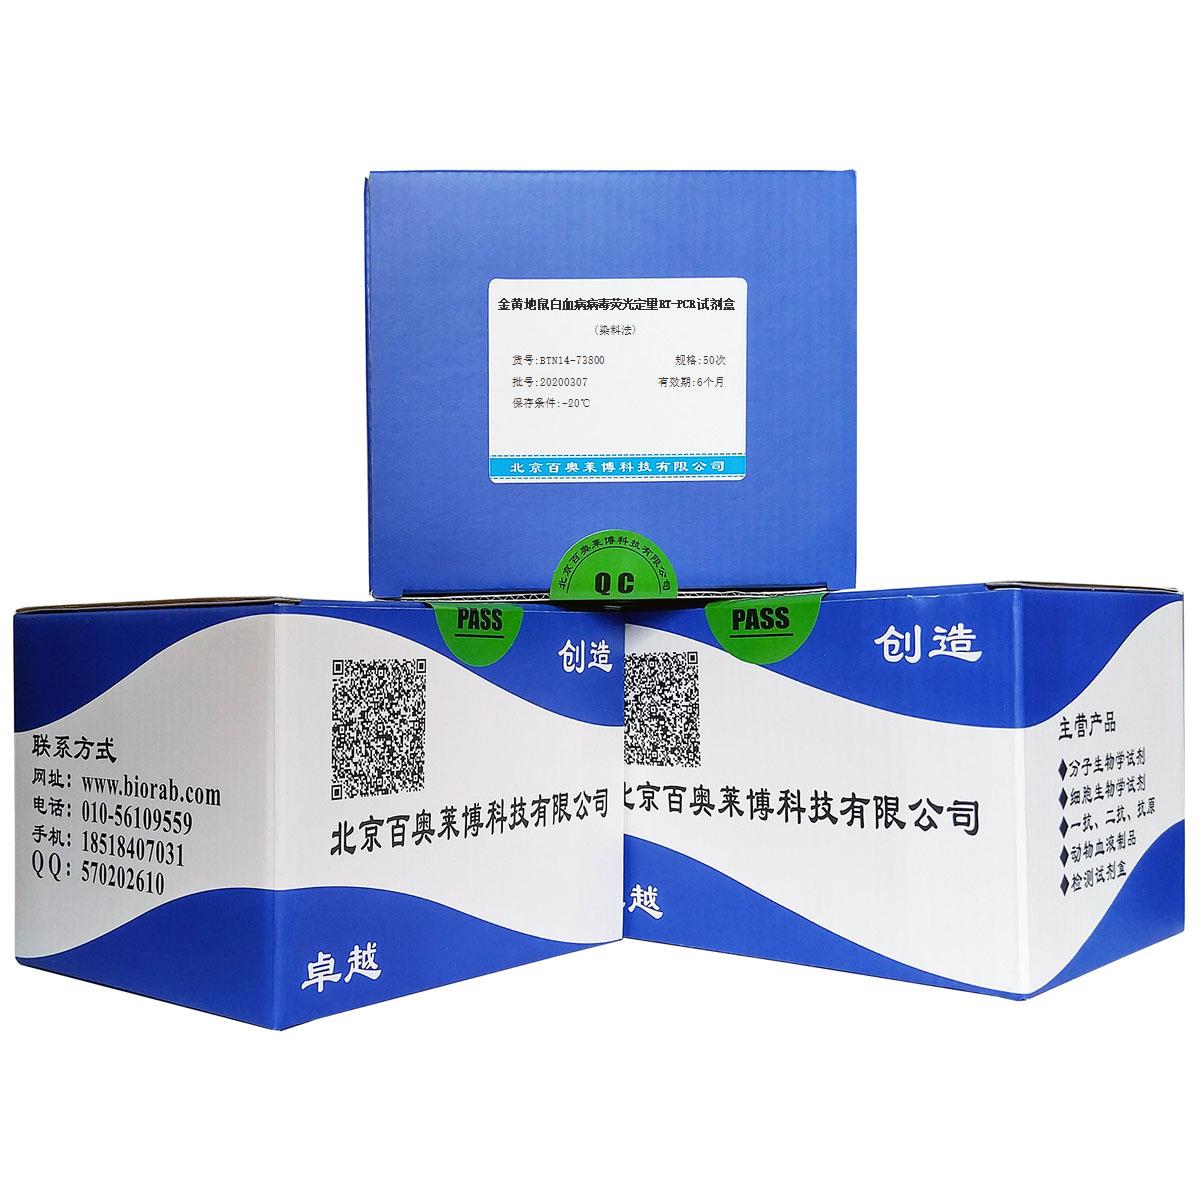 金黄地鼠白血病病毒荧光定量RT-PCR试剂盒(染料法)